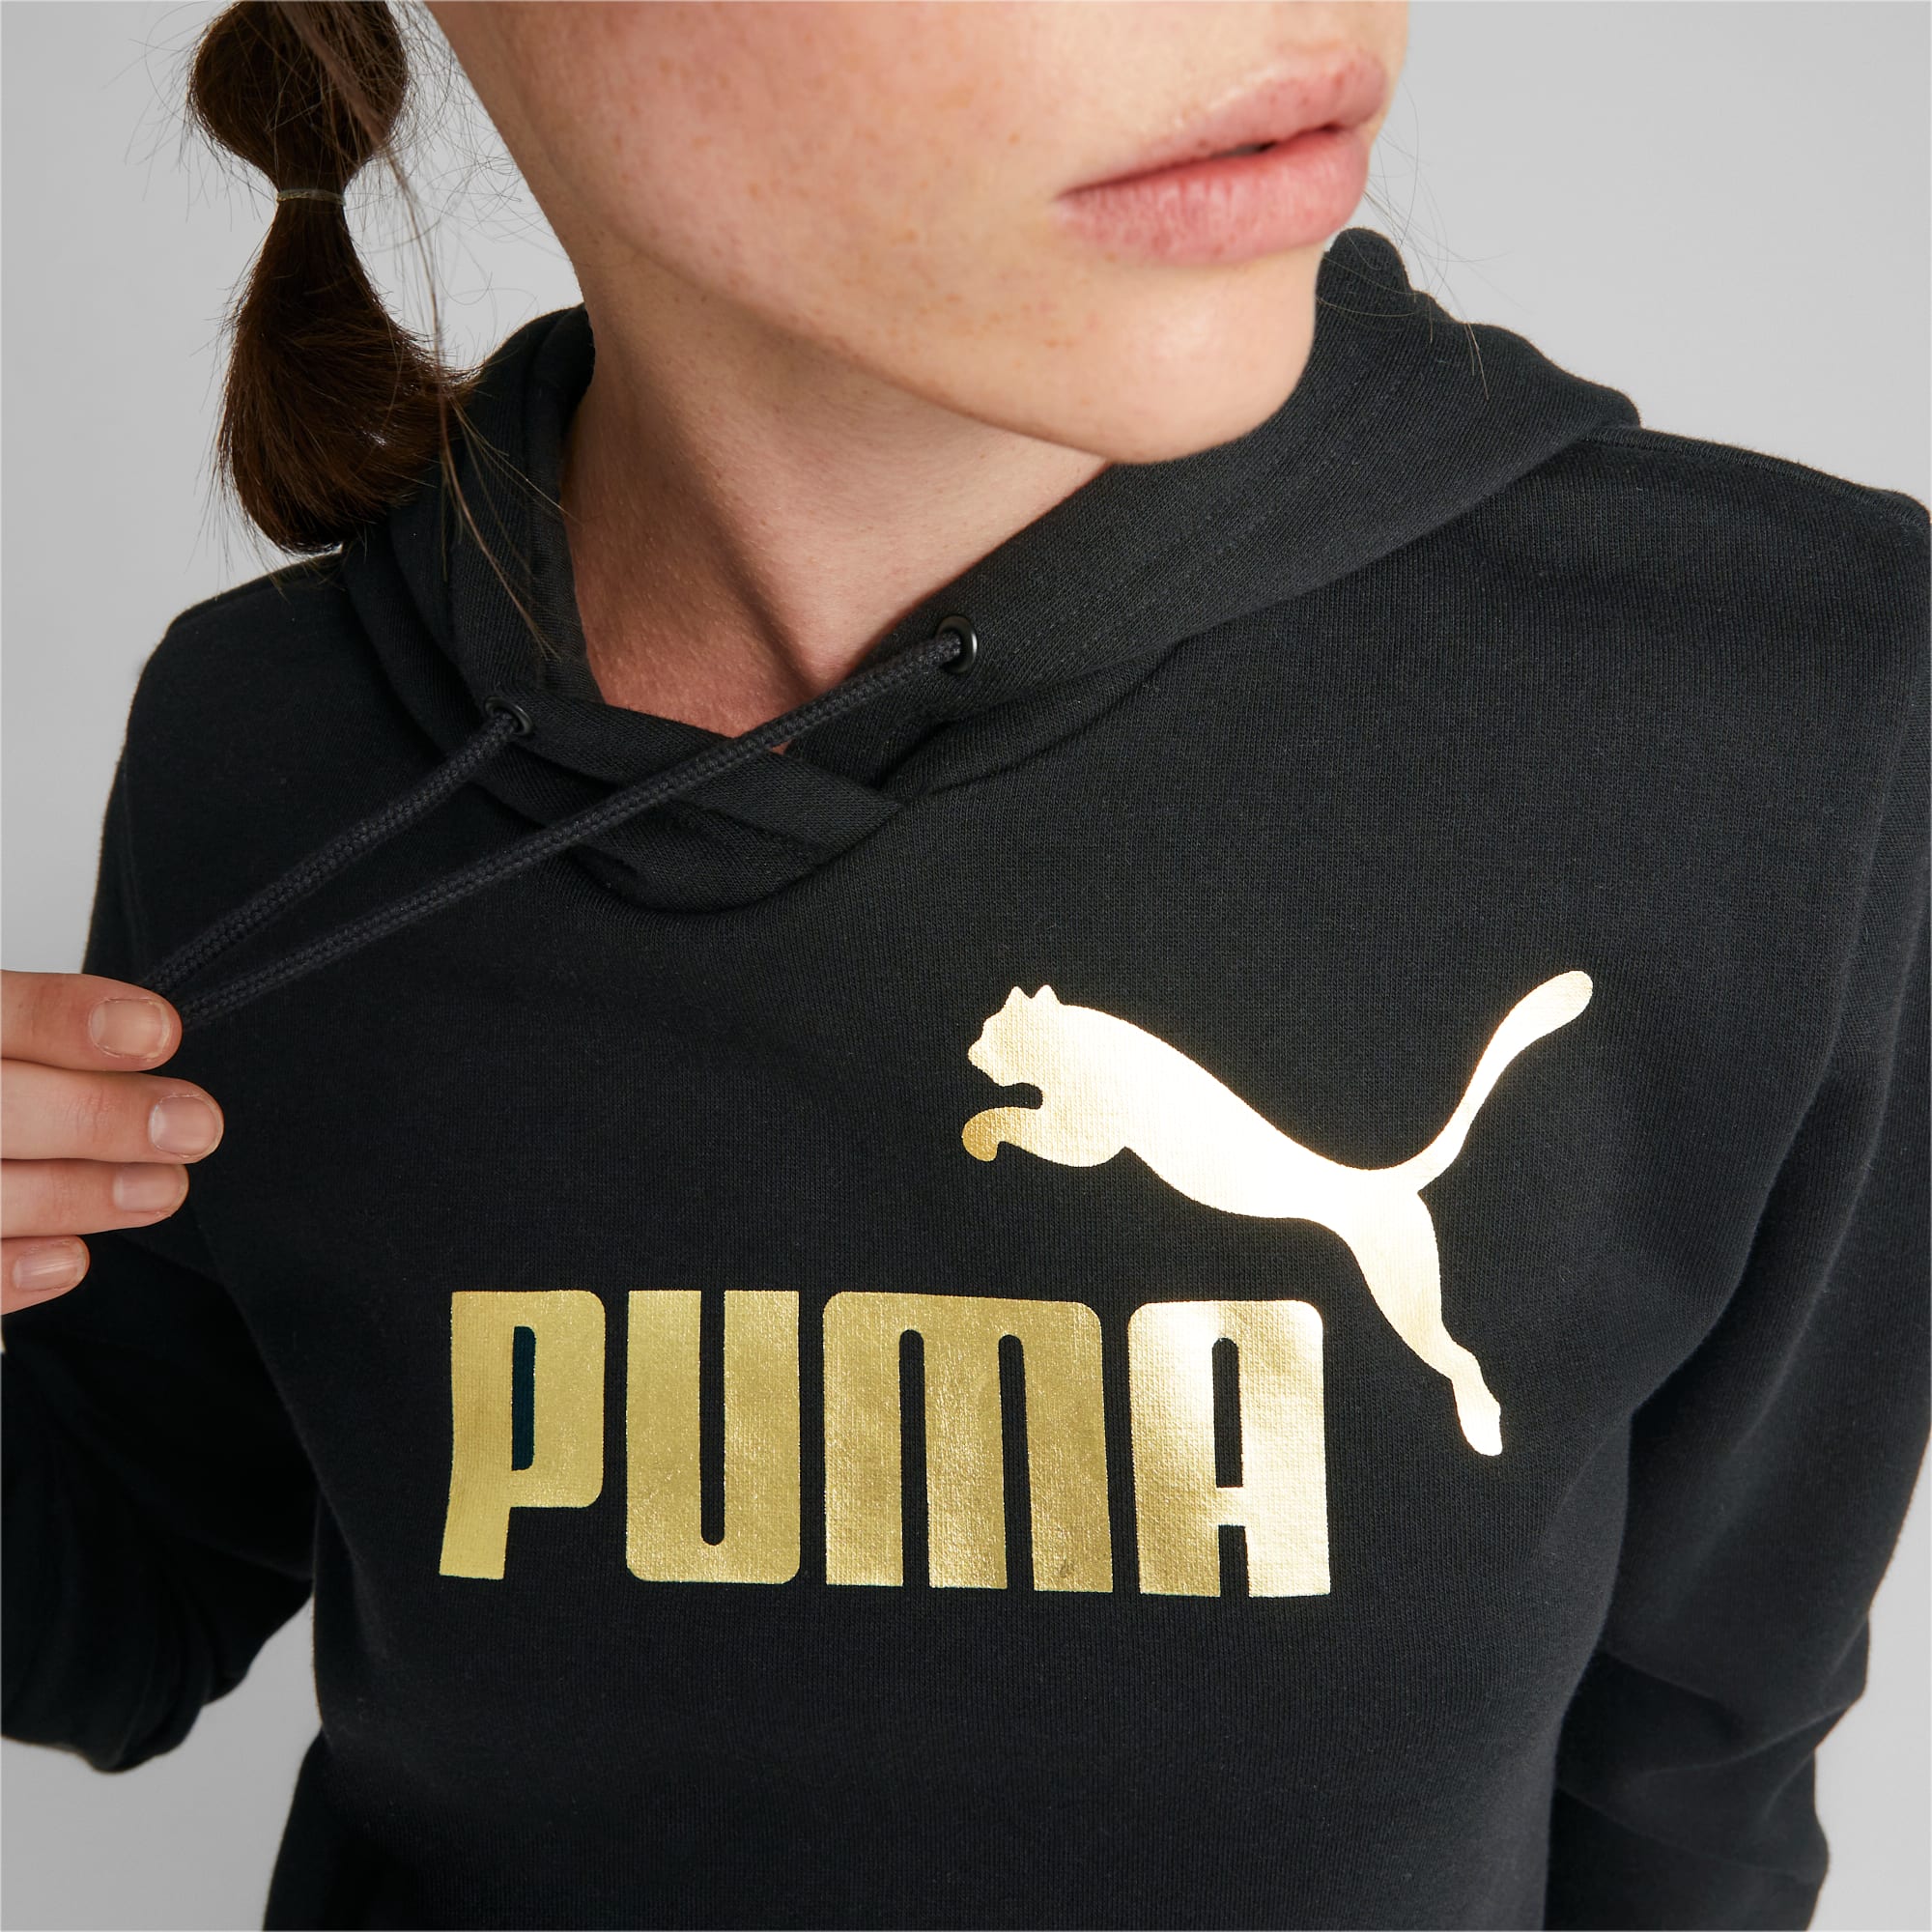 PUMA Sweat à Capuche Essentials+ Metallic Logo Femme, Noir/Or